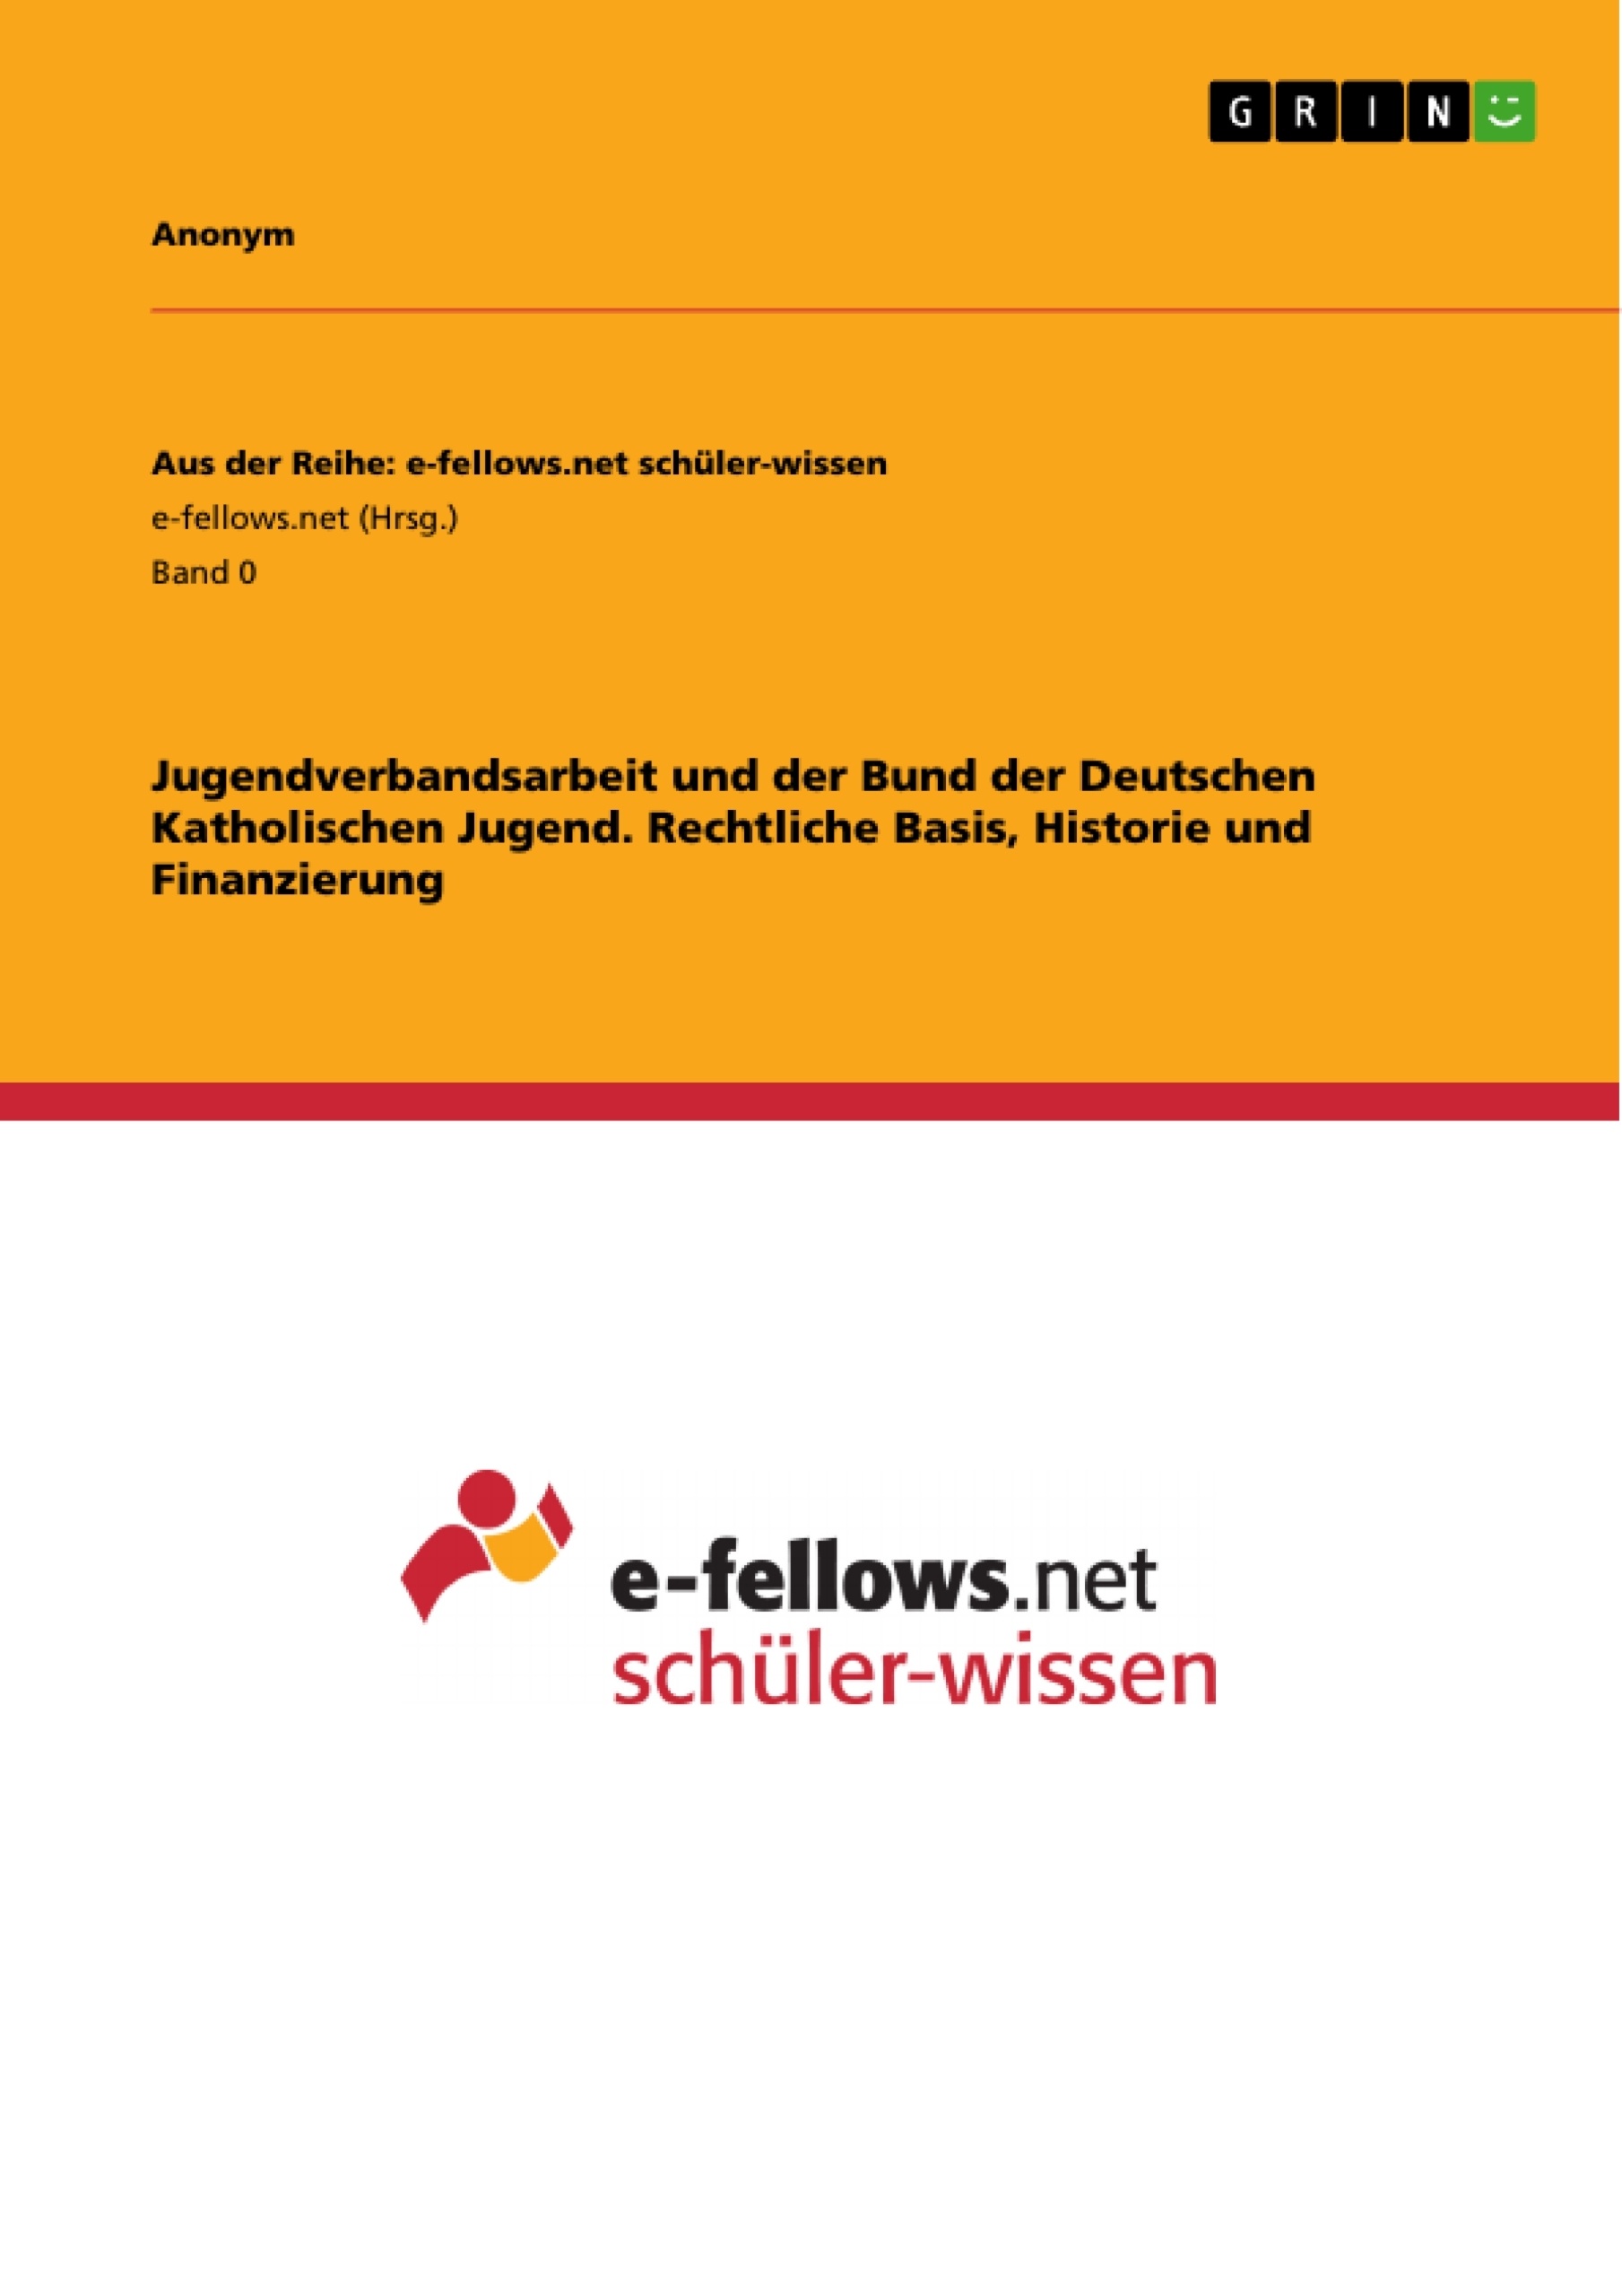 Title: Jugendverbandsarbeit und der Bund der Deutschen Katholischen Jugend. Rechtliche Basis, Historie und Finanzierung